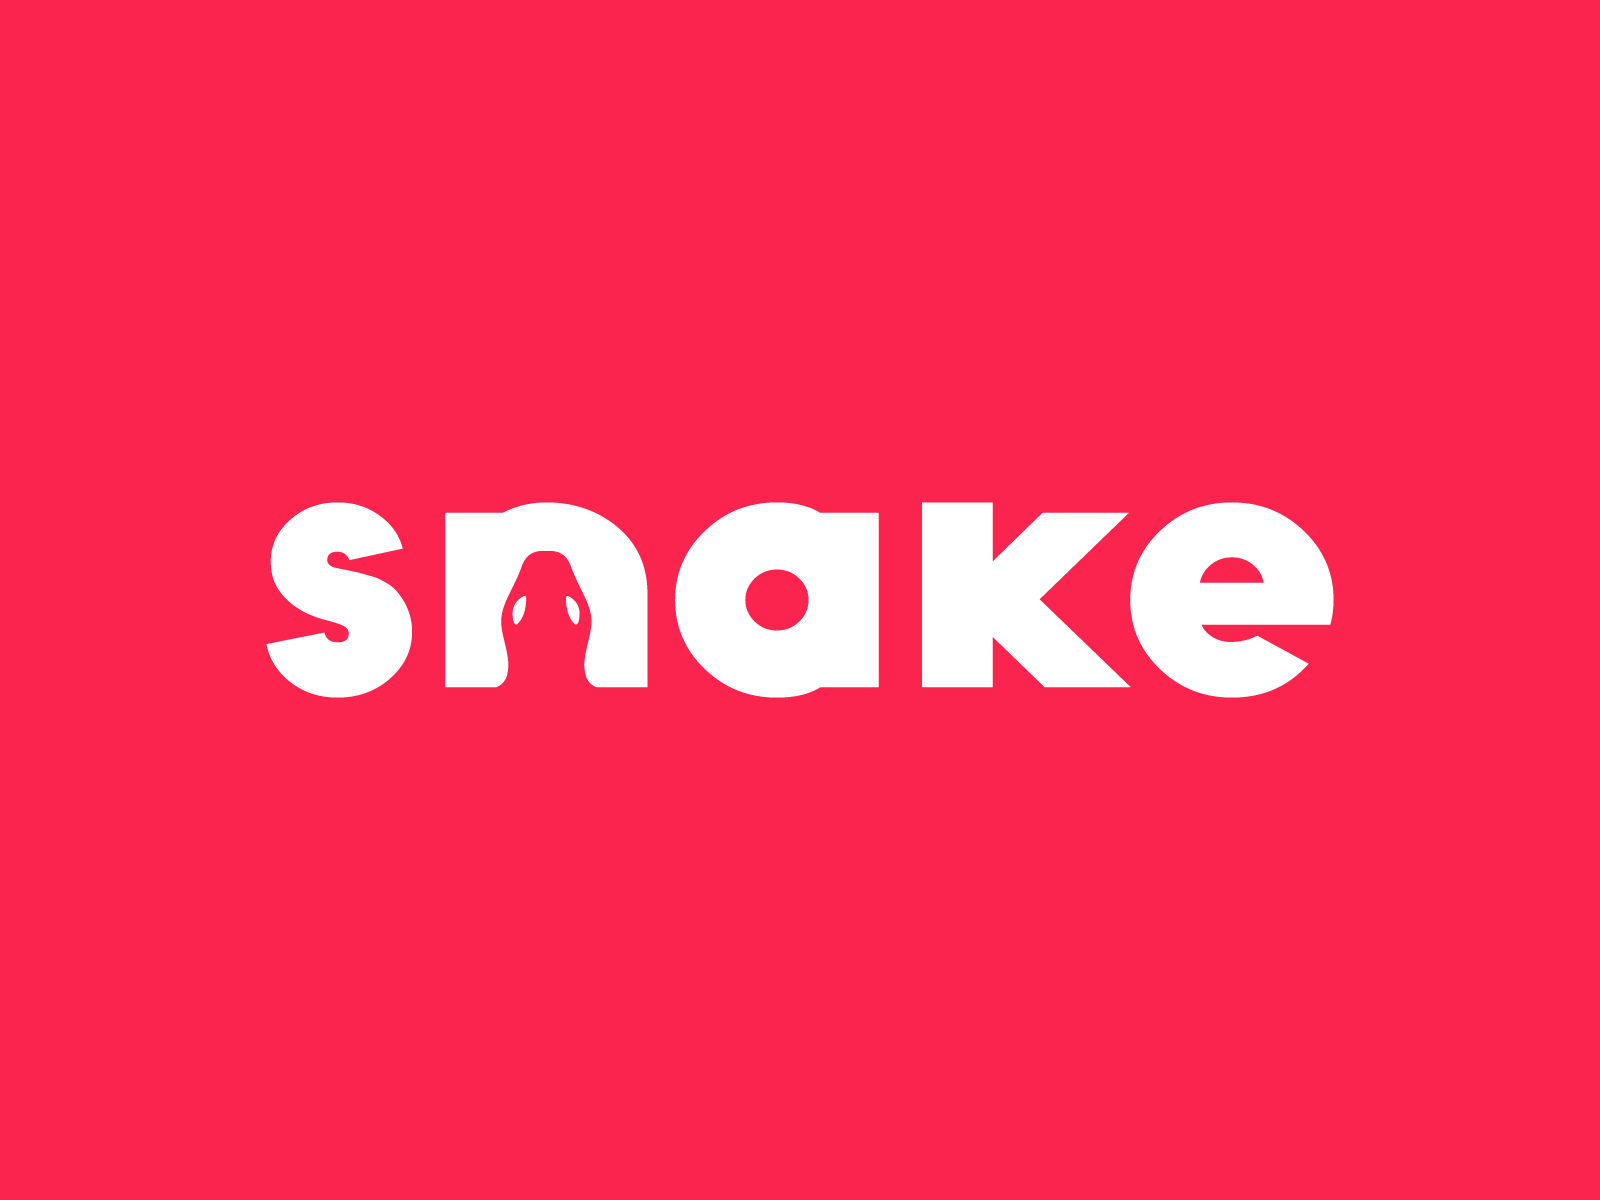 Snake logo android logo animation branding design feminine art icon identity illustration latterlogo logo minimal signature work typography